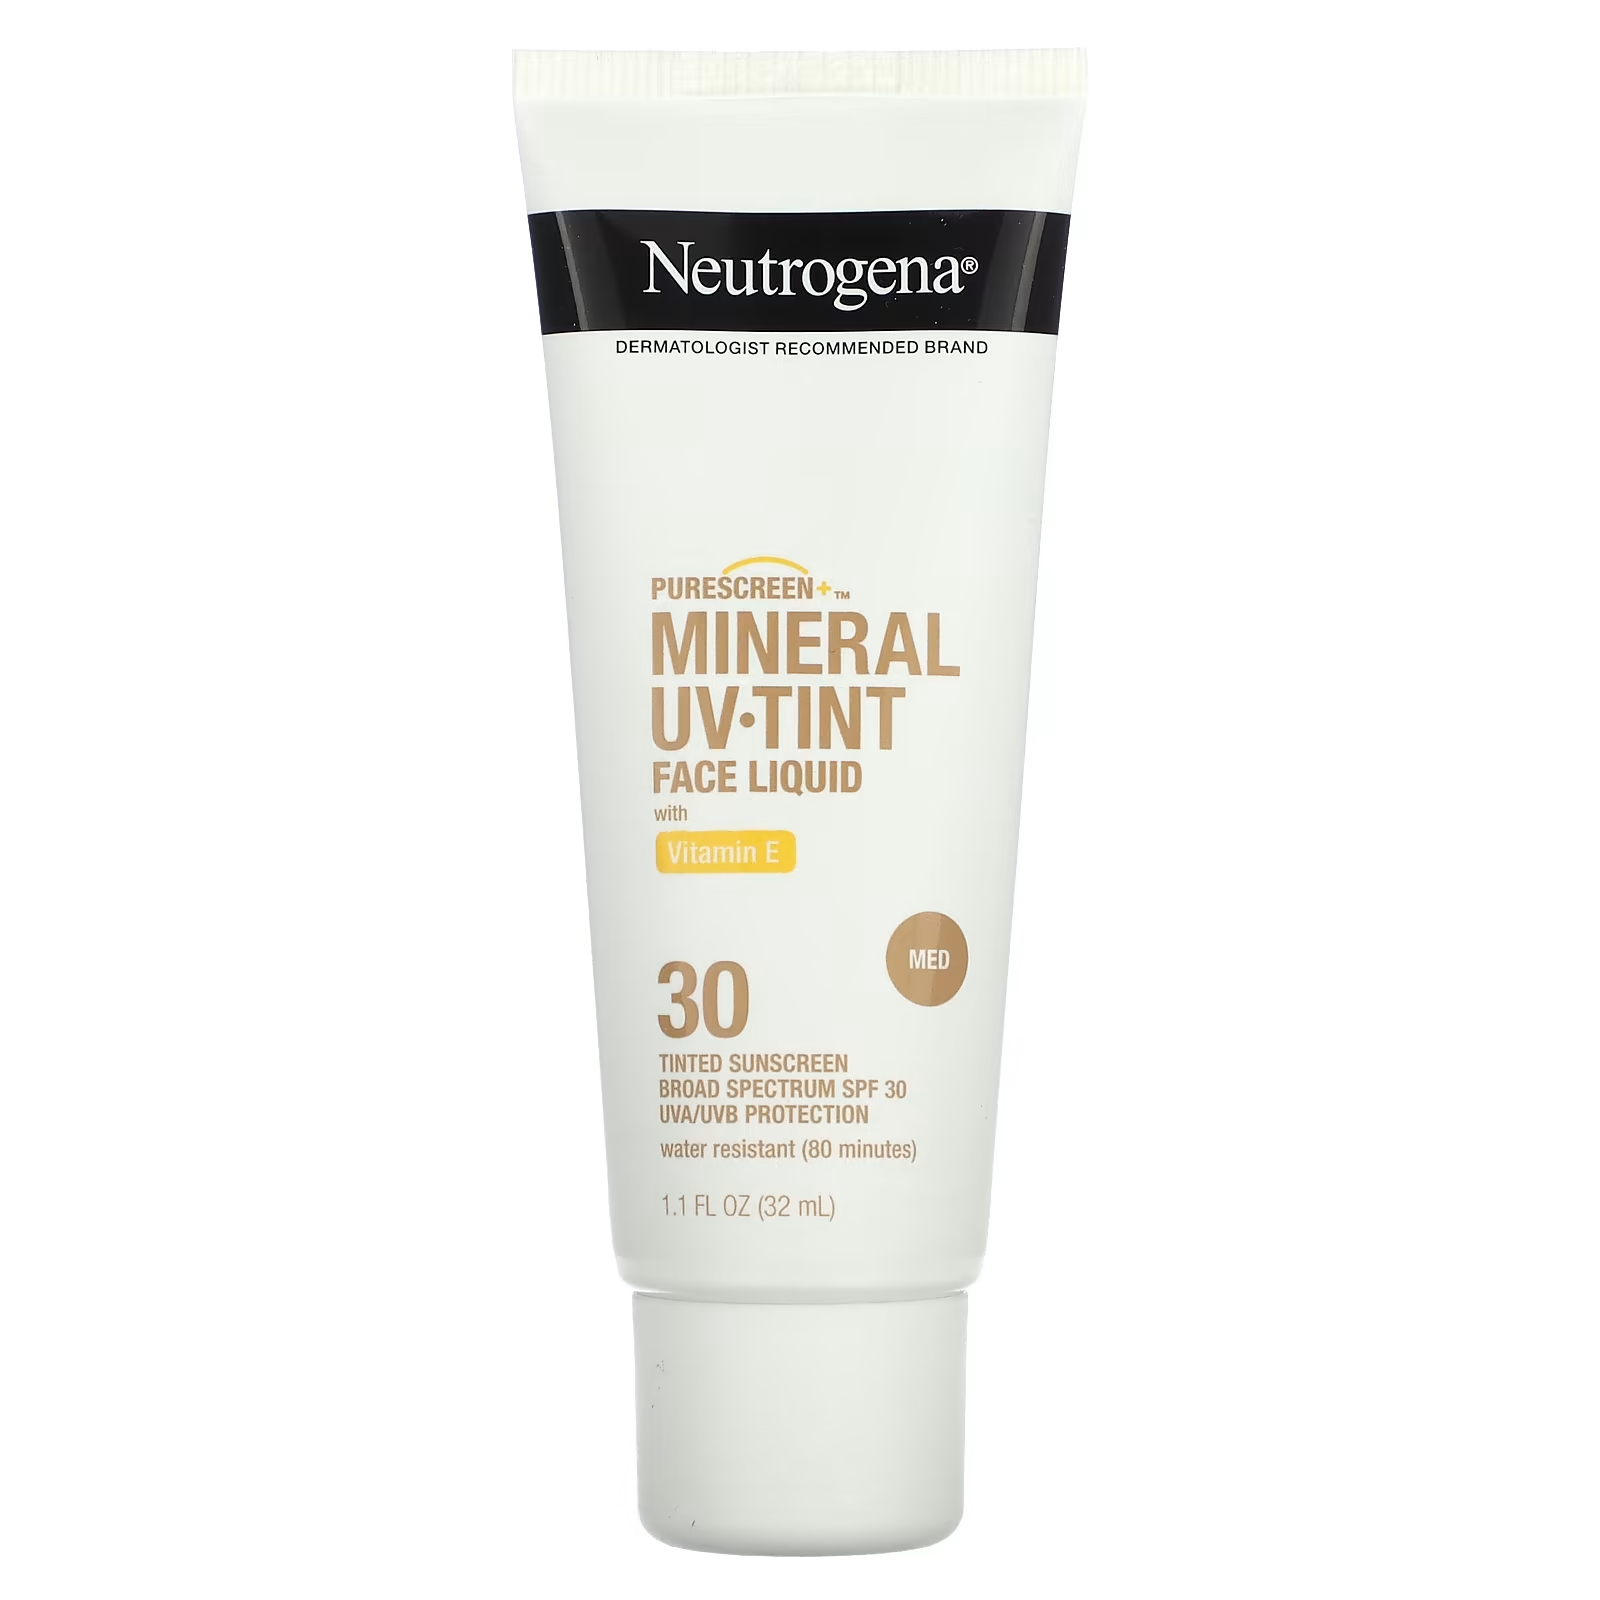 Солнцезащитный крем Neutrogena Purescreen+ Mineral UV Tint Face Liquid SPF 30 с витамином Е, 32 мл. солнцезащитный крем для лица mila moursi солнцезащитный экран широкого спектра действия spf 30